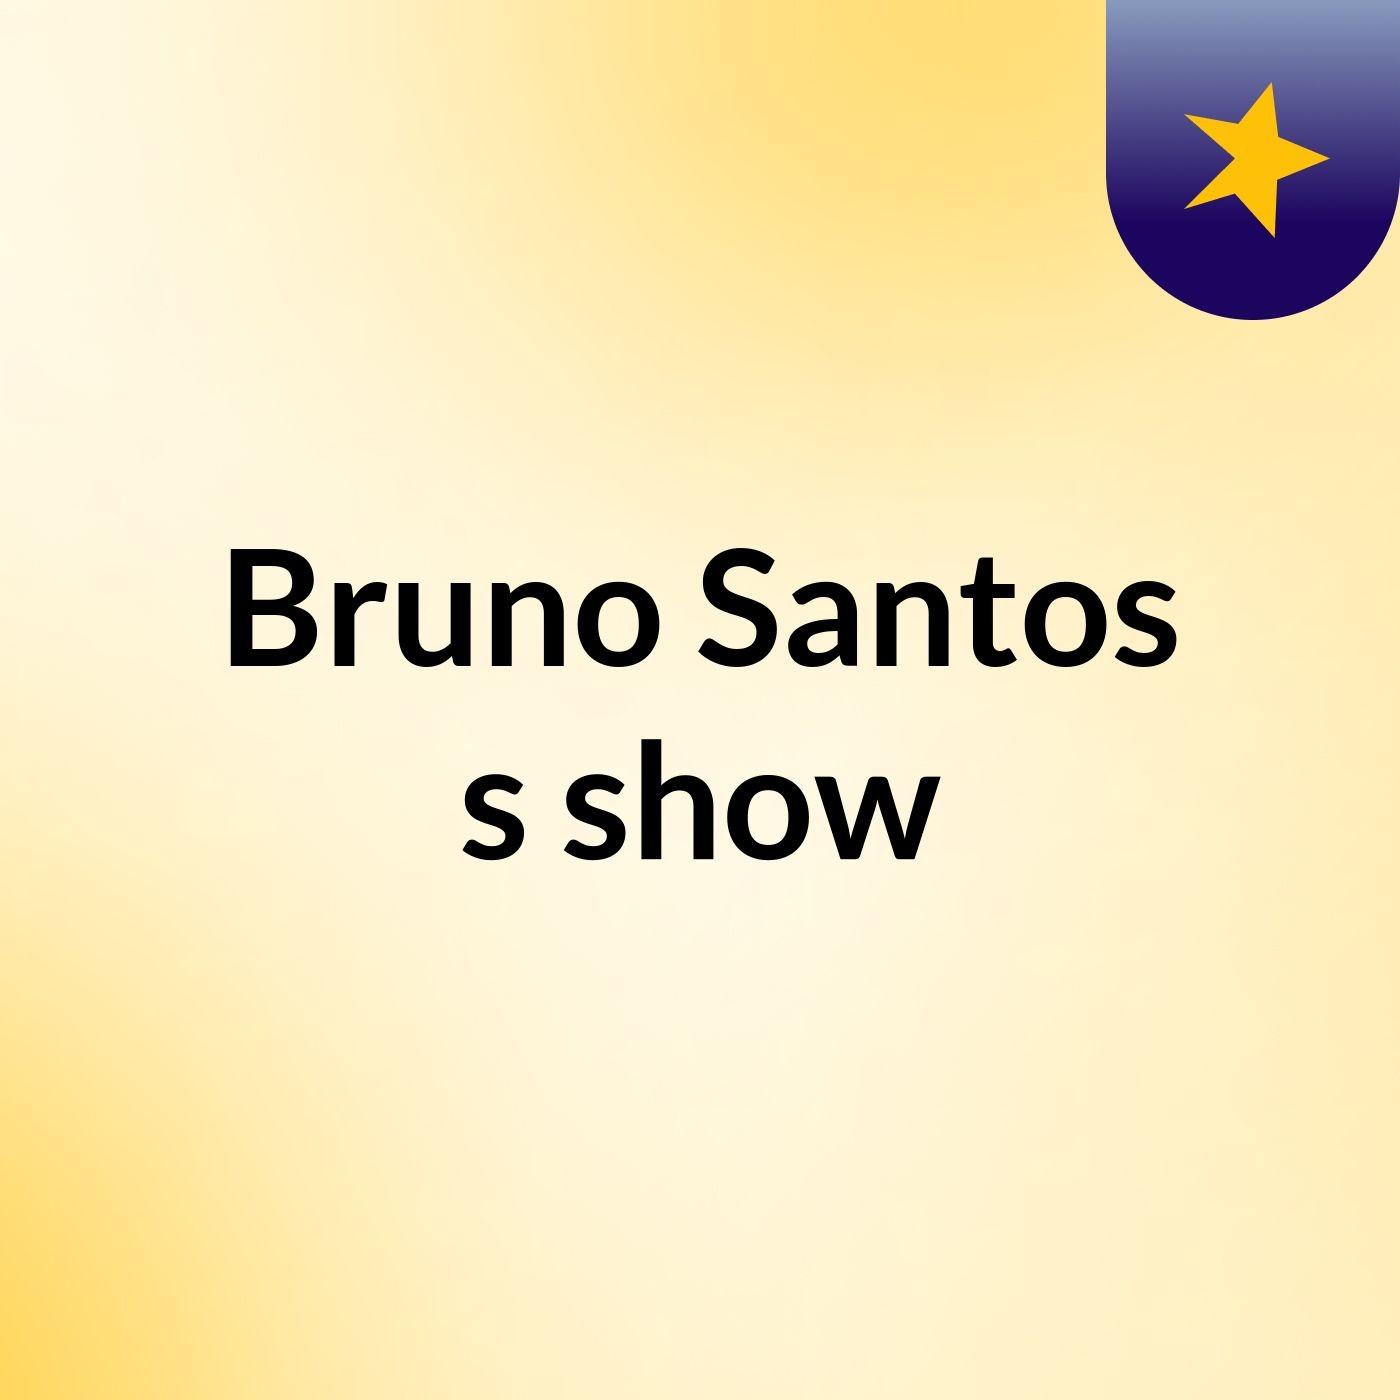 Bruno Santos's show